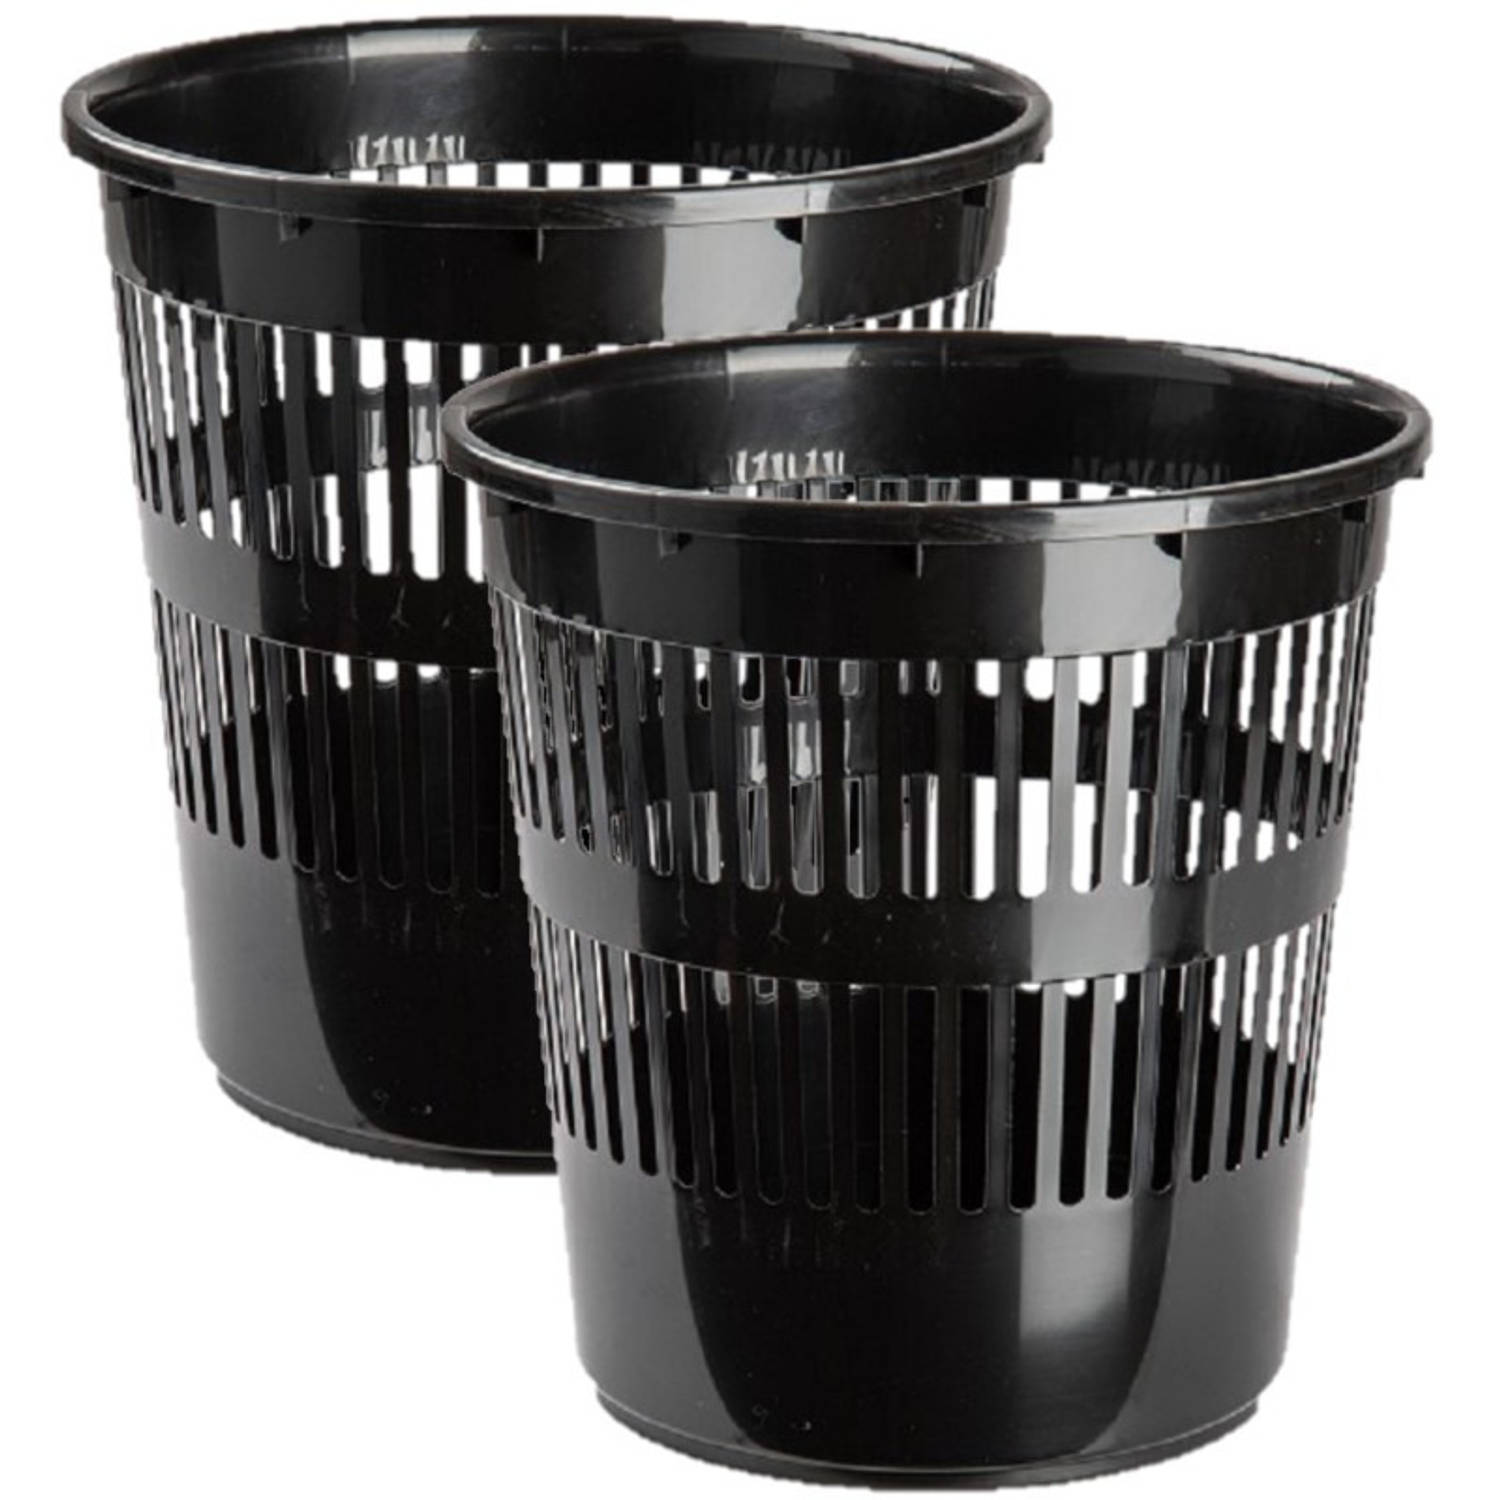 2x stuks afvalbakken/vuilnisbakken/kantoorprullenbakken plastic zwart 28 cm - Prullenmanden